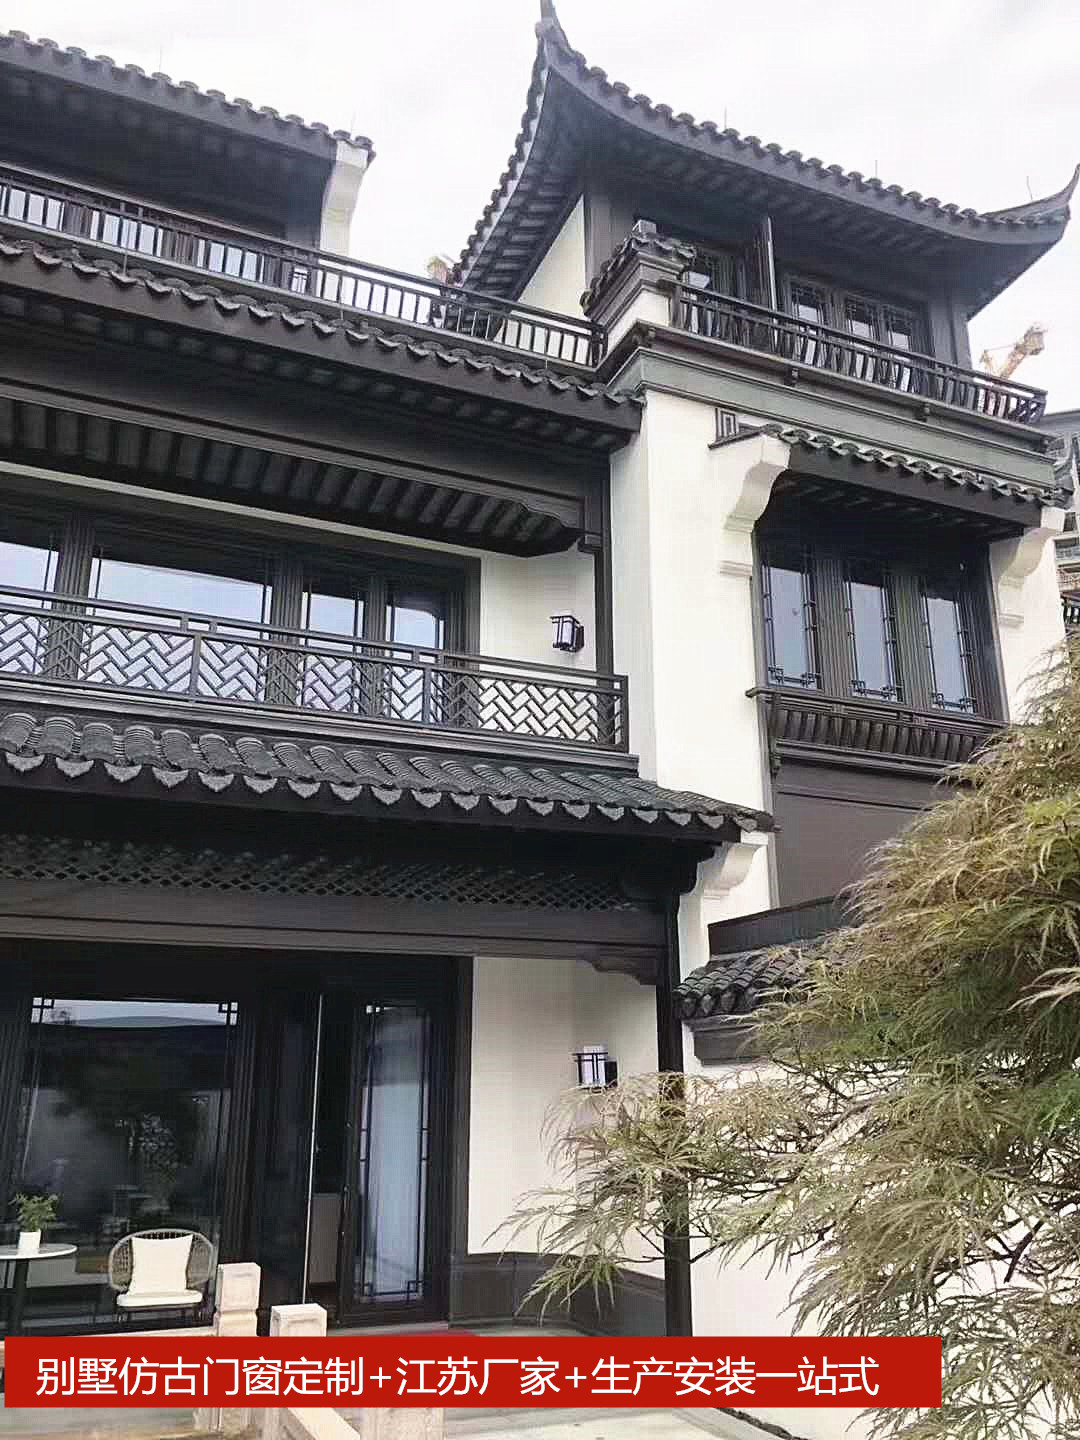 中式房子仿古门窗颜色.jpg